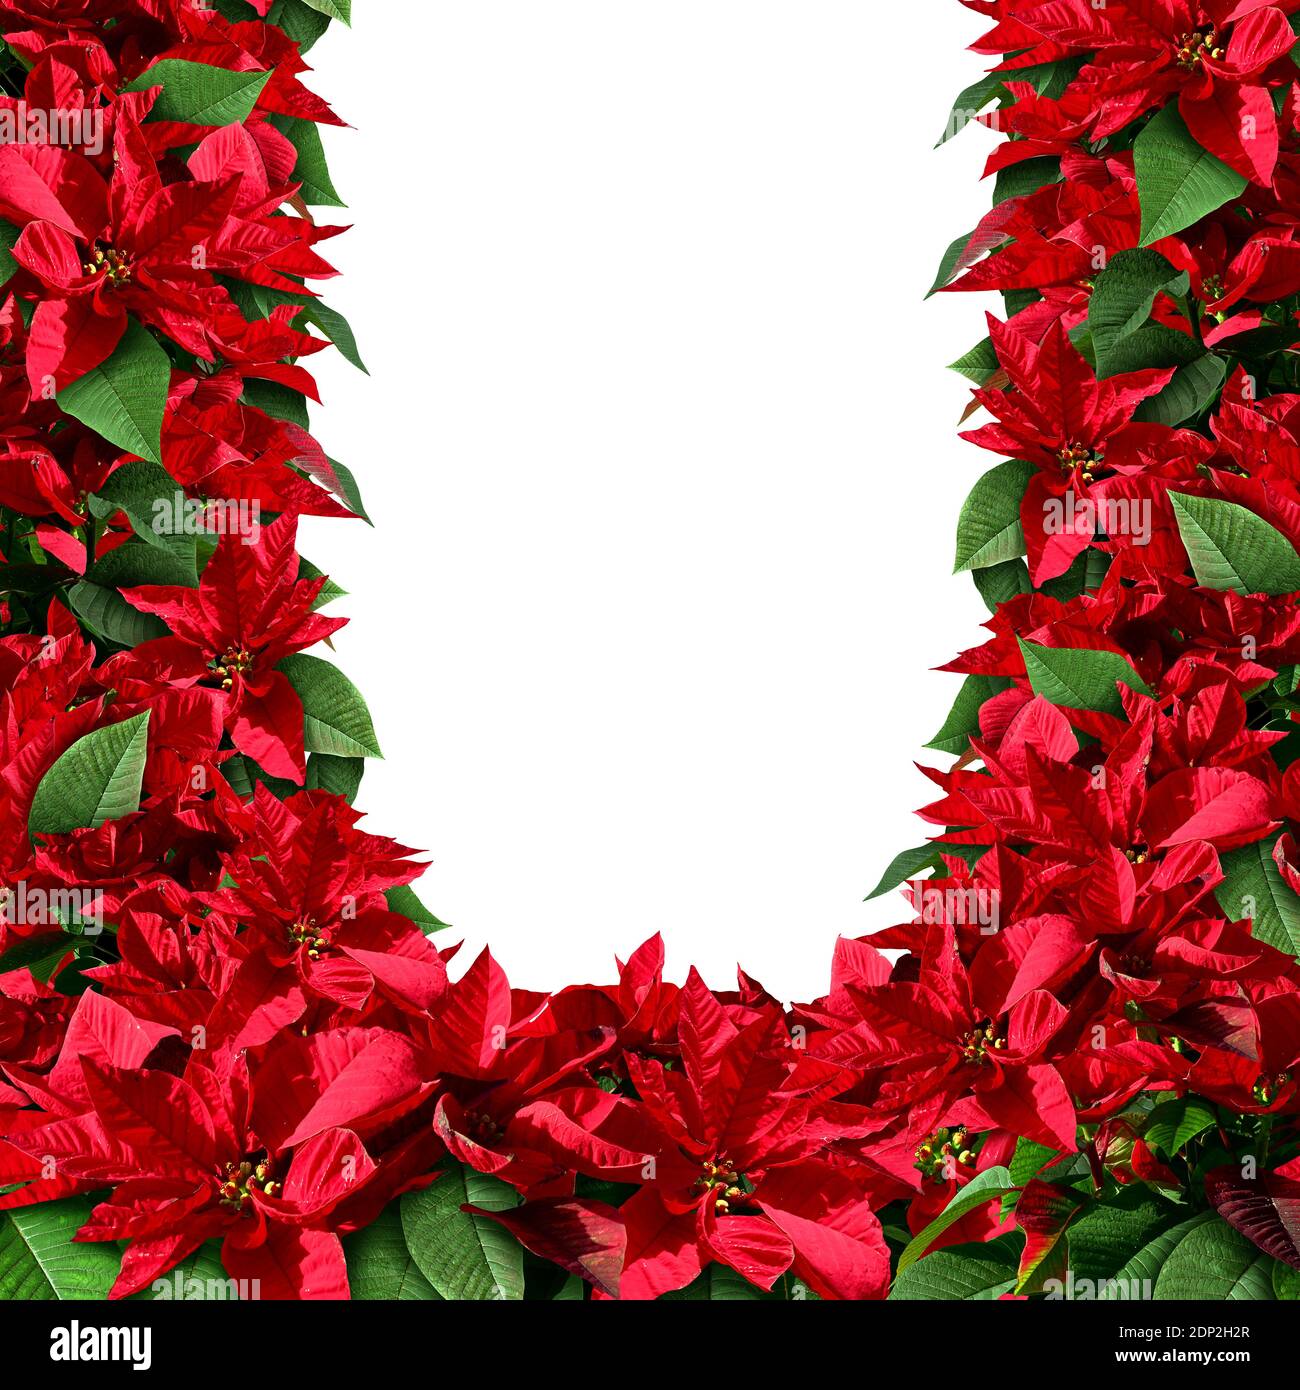 Poinsetta als Rohling und Bordüre als Weihnachtsbaum Element mit Blumenpflanzen aus mittelamerika und Mexiko vertreten. Stockfoto